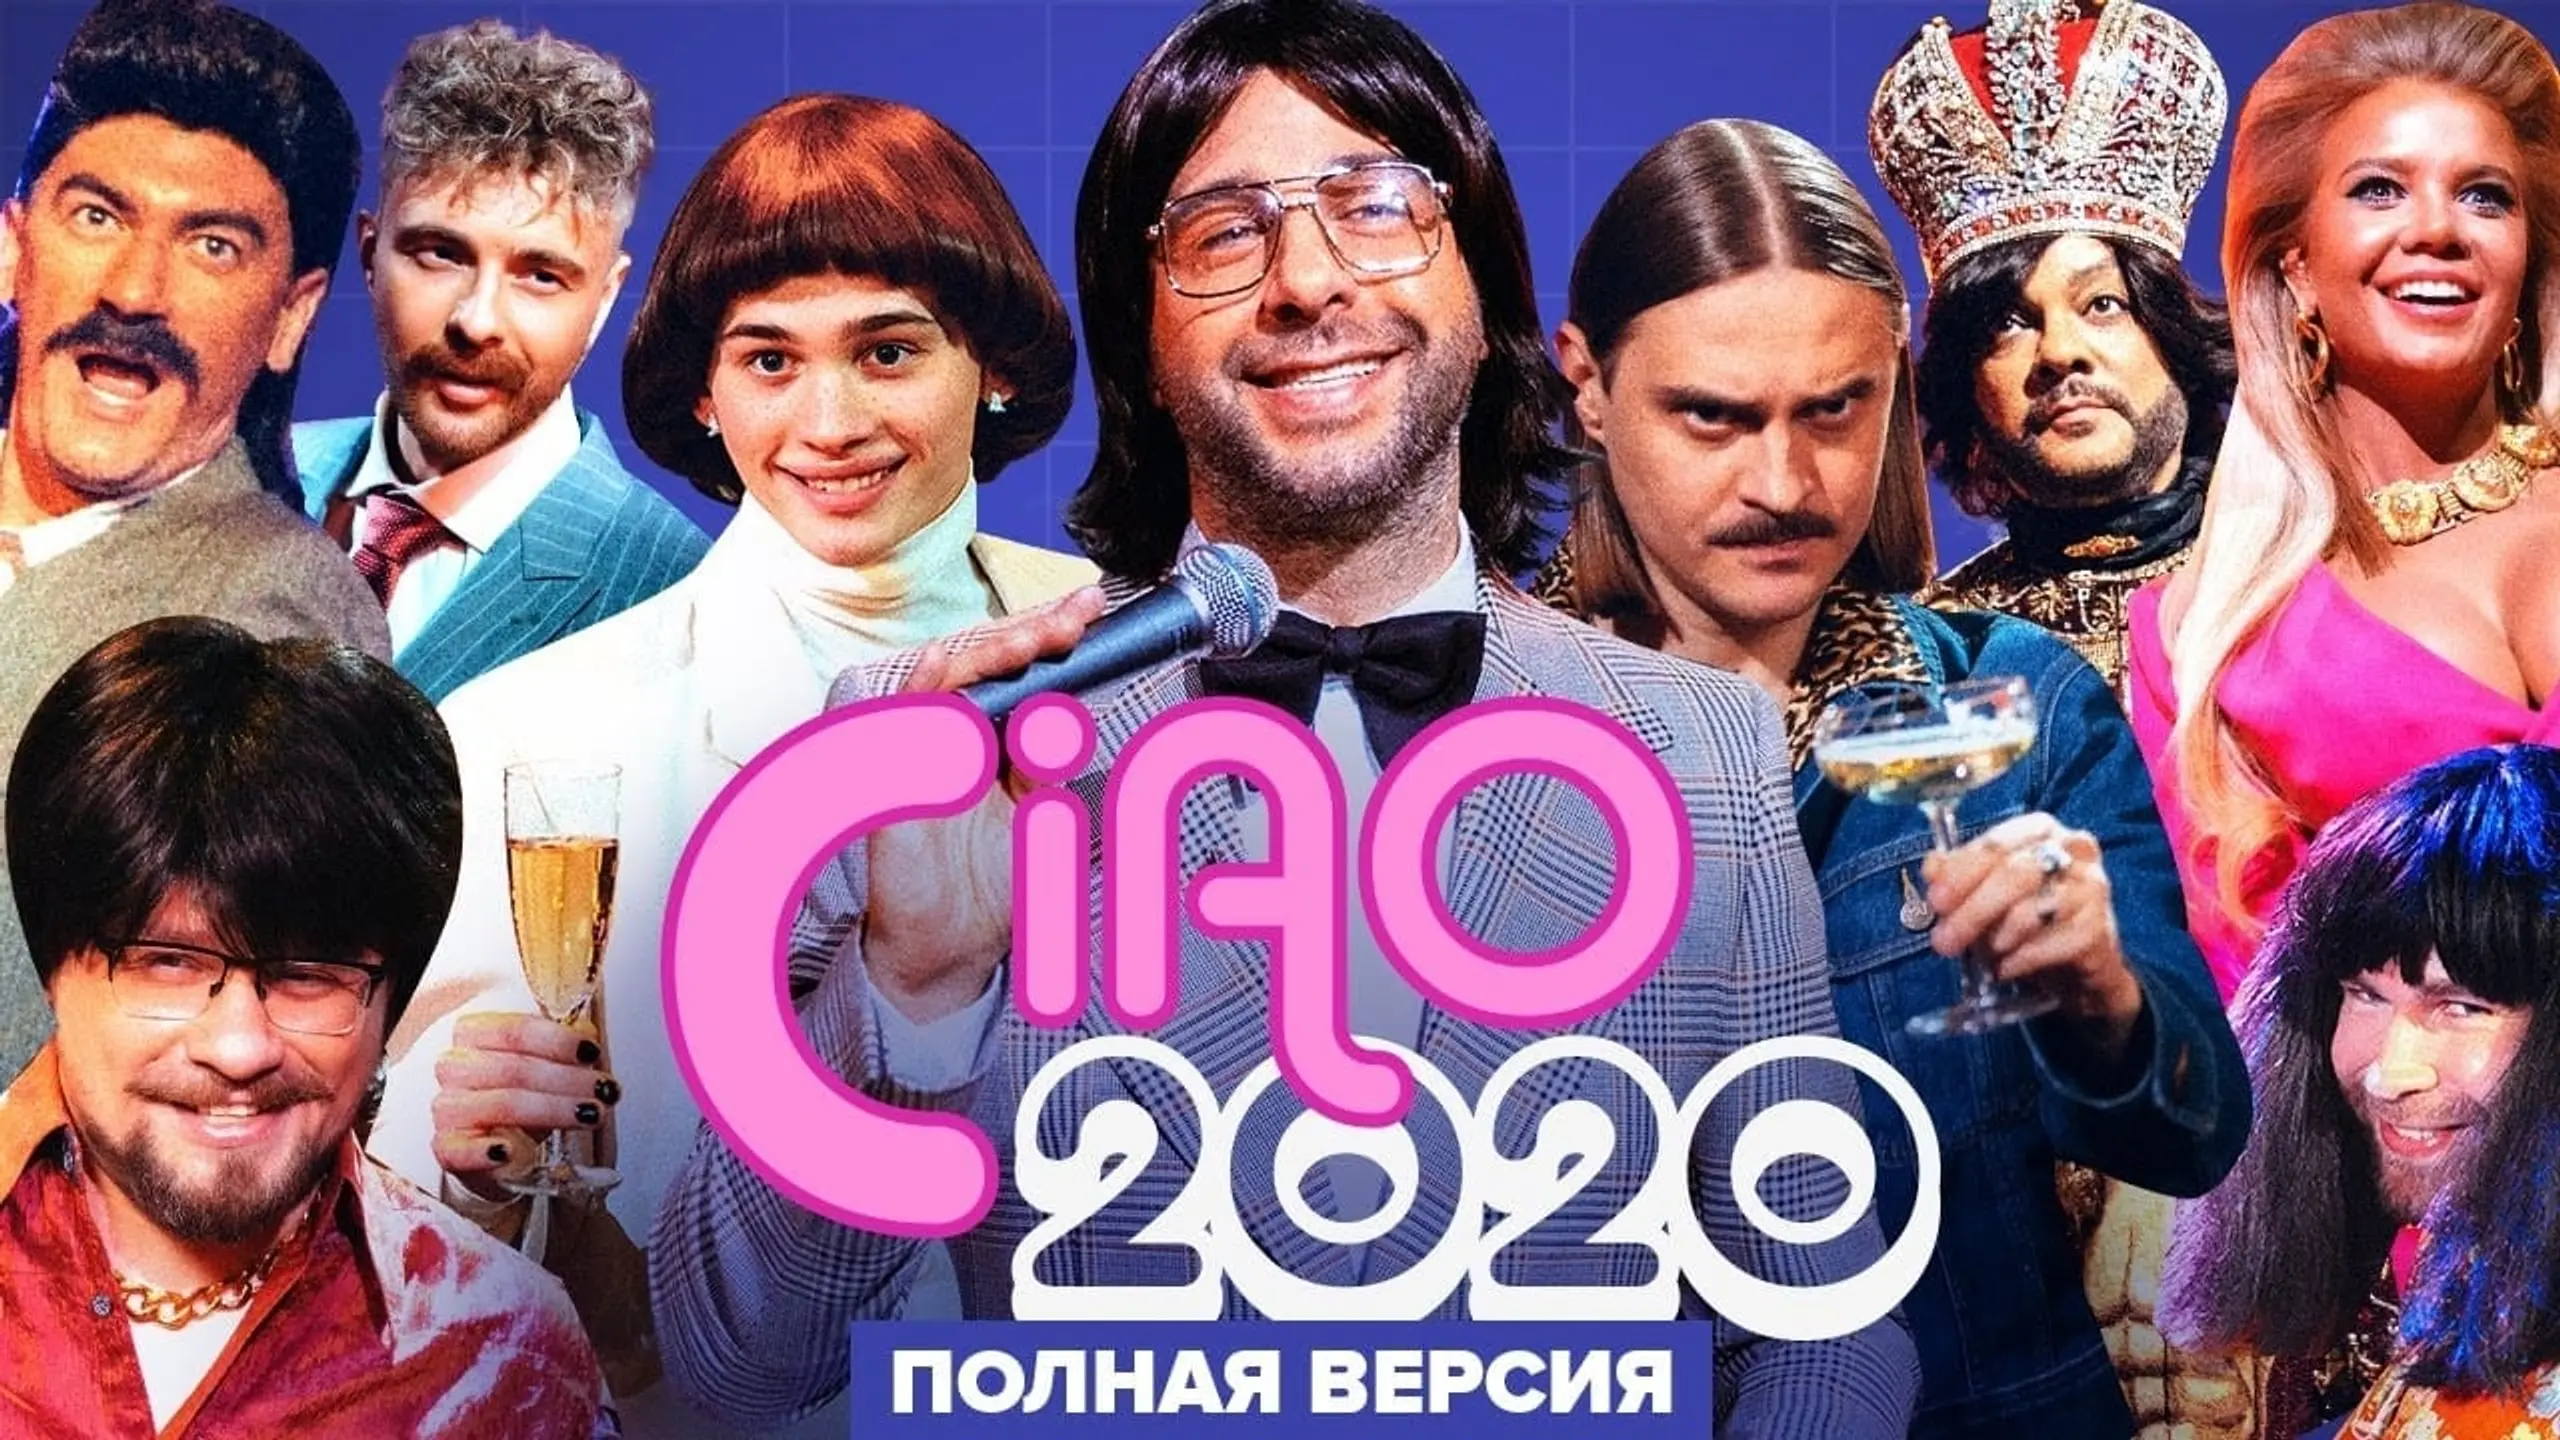 Ciao, 2020!